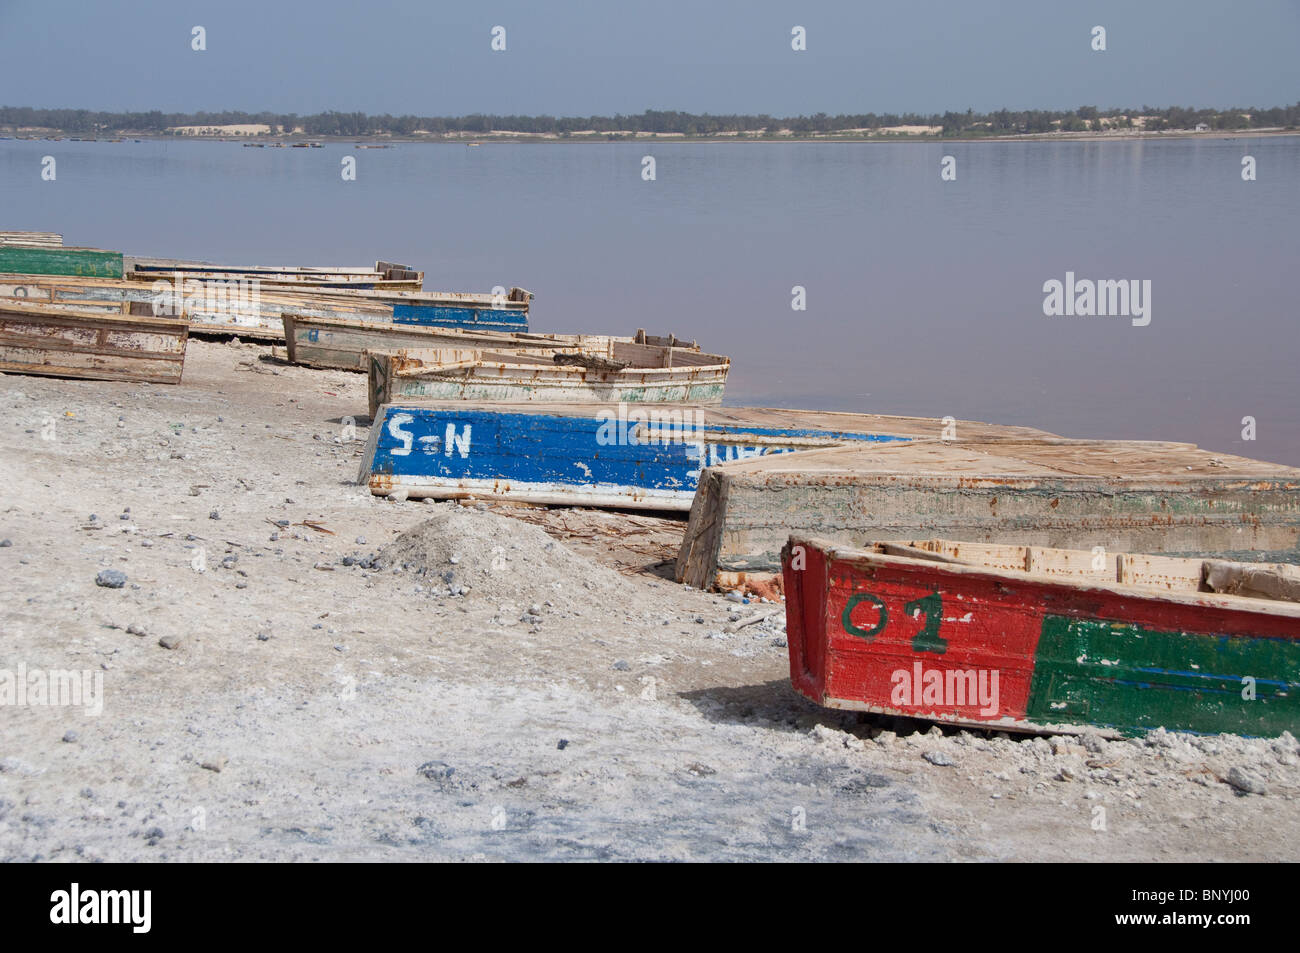 Afrique, Sénégal, Dakar. Le Lac Rose de Retba. La récolte de sel bateaux le long de la rive du lac saumâtre. Banque D'Images